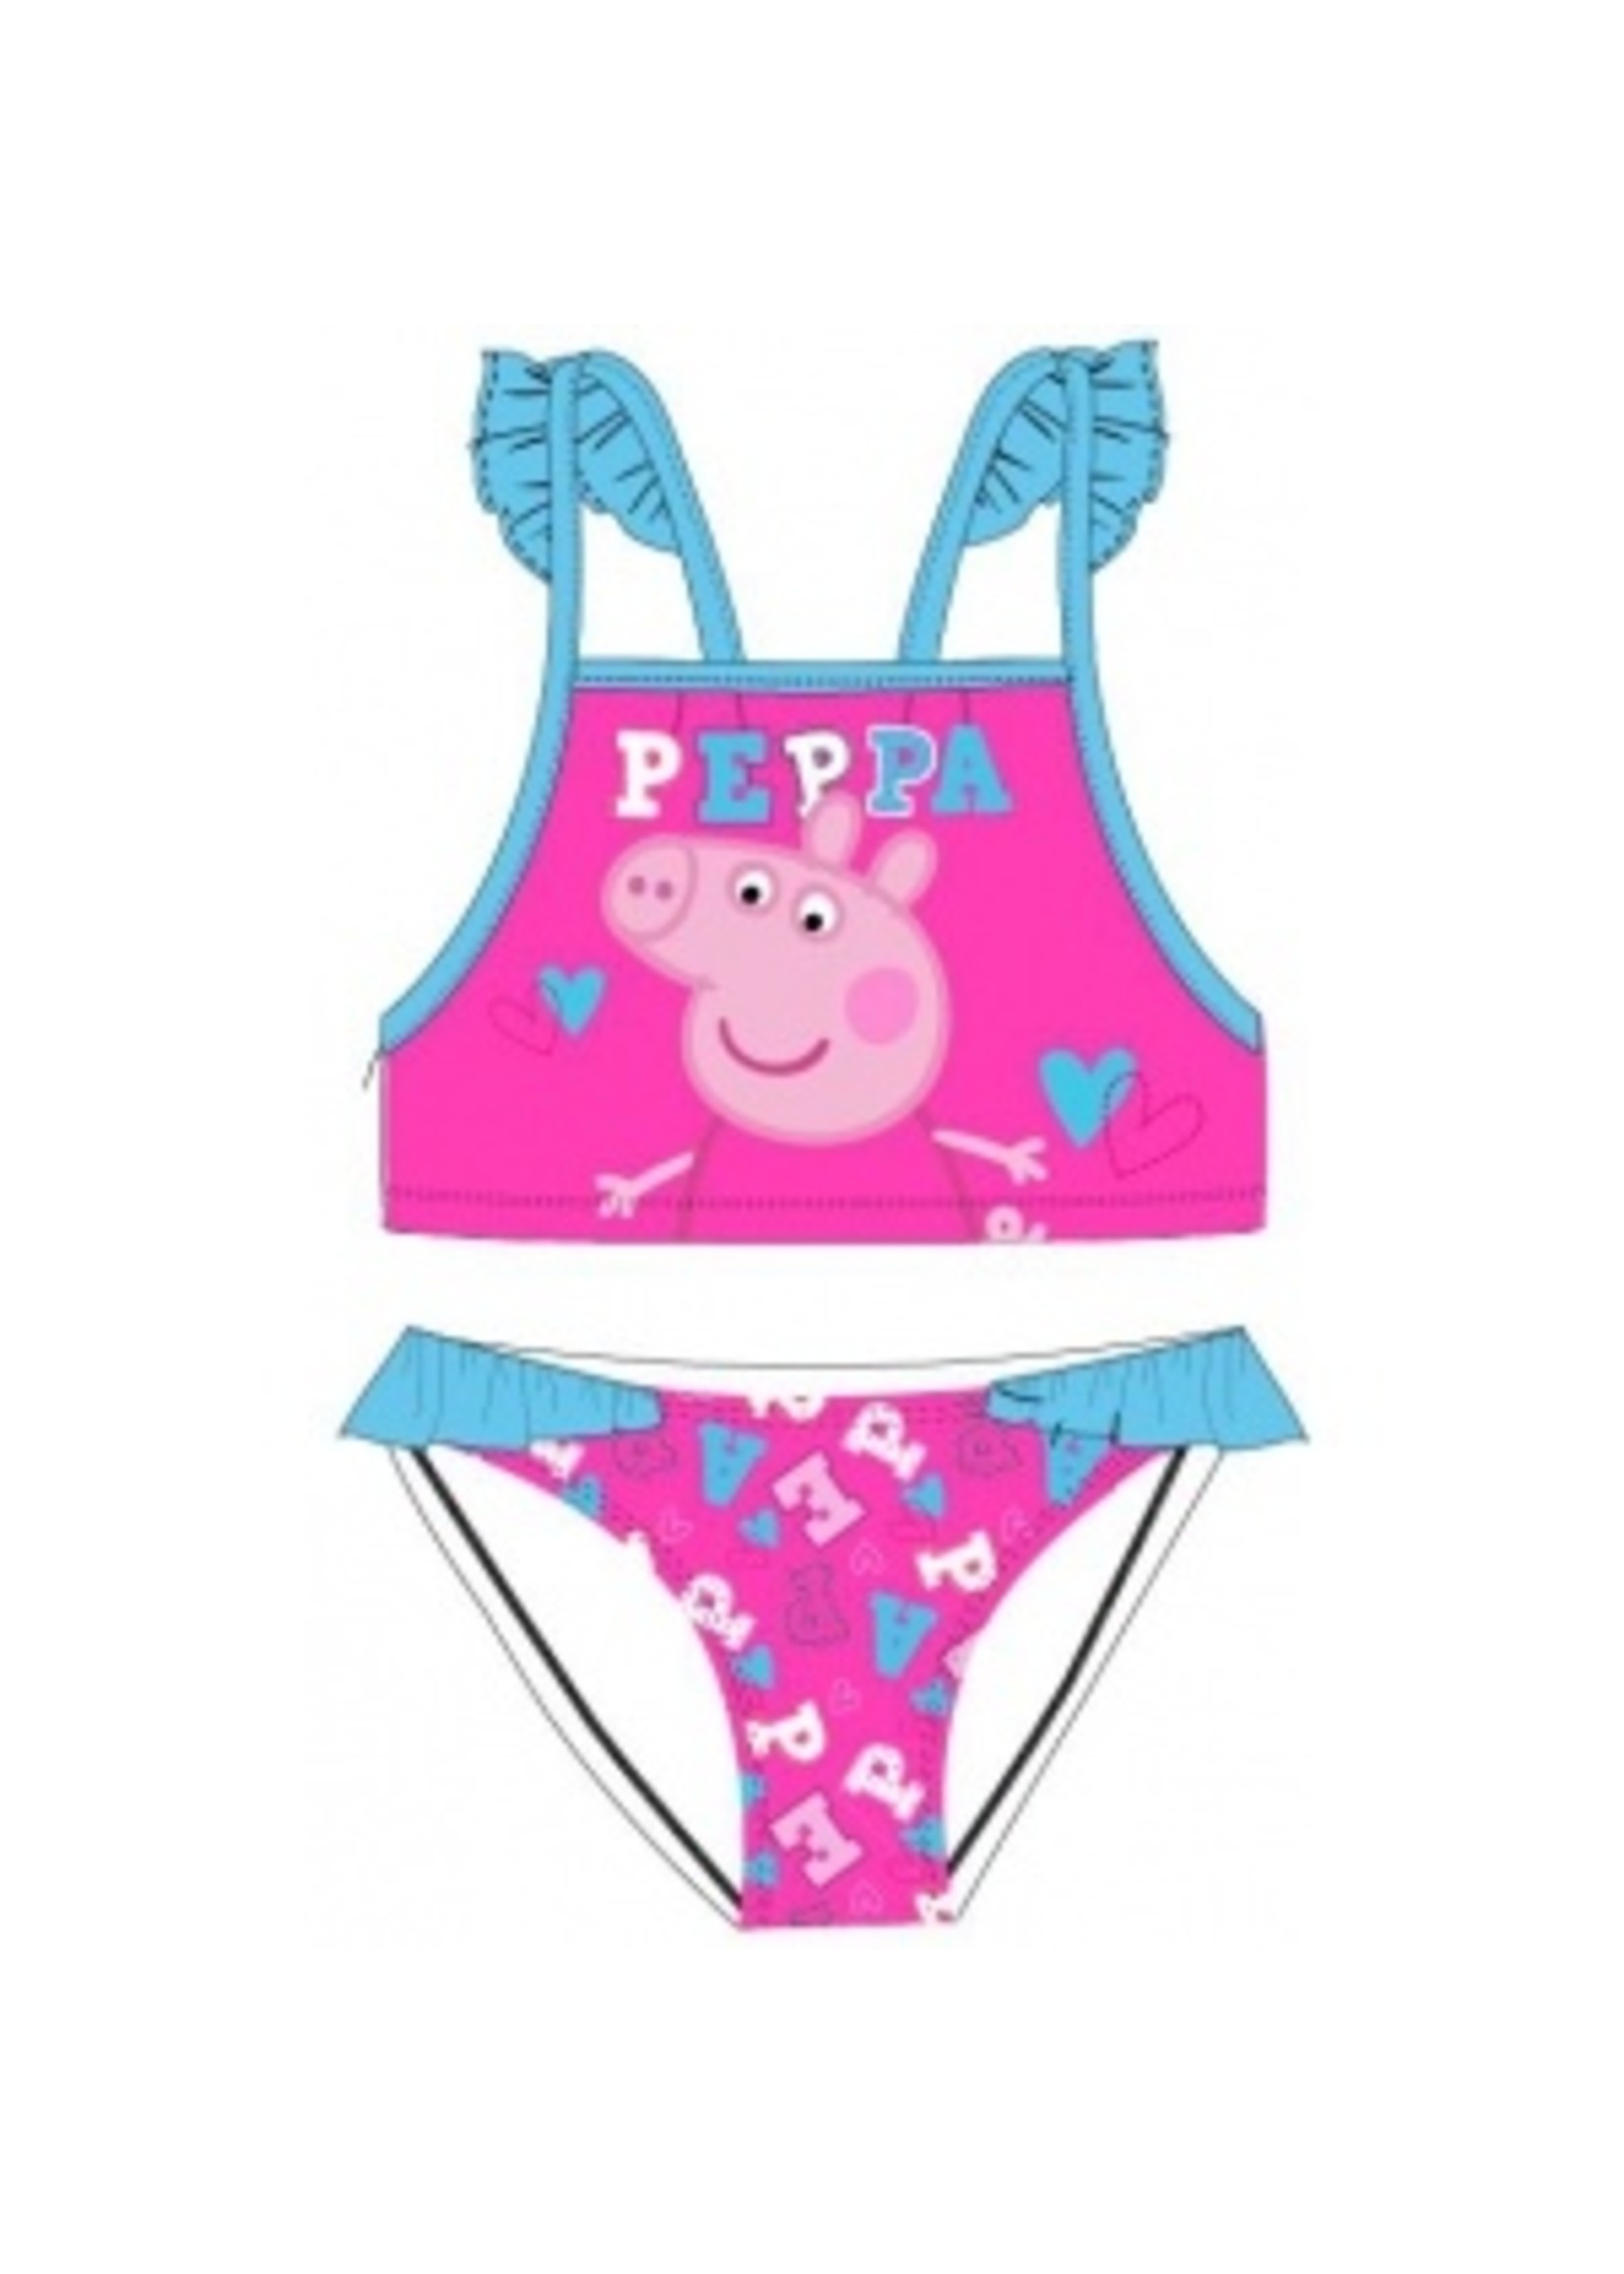 Peppa Pig  Peppa Pig bikini from PeppaPig pink